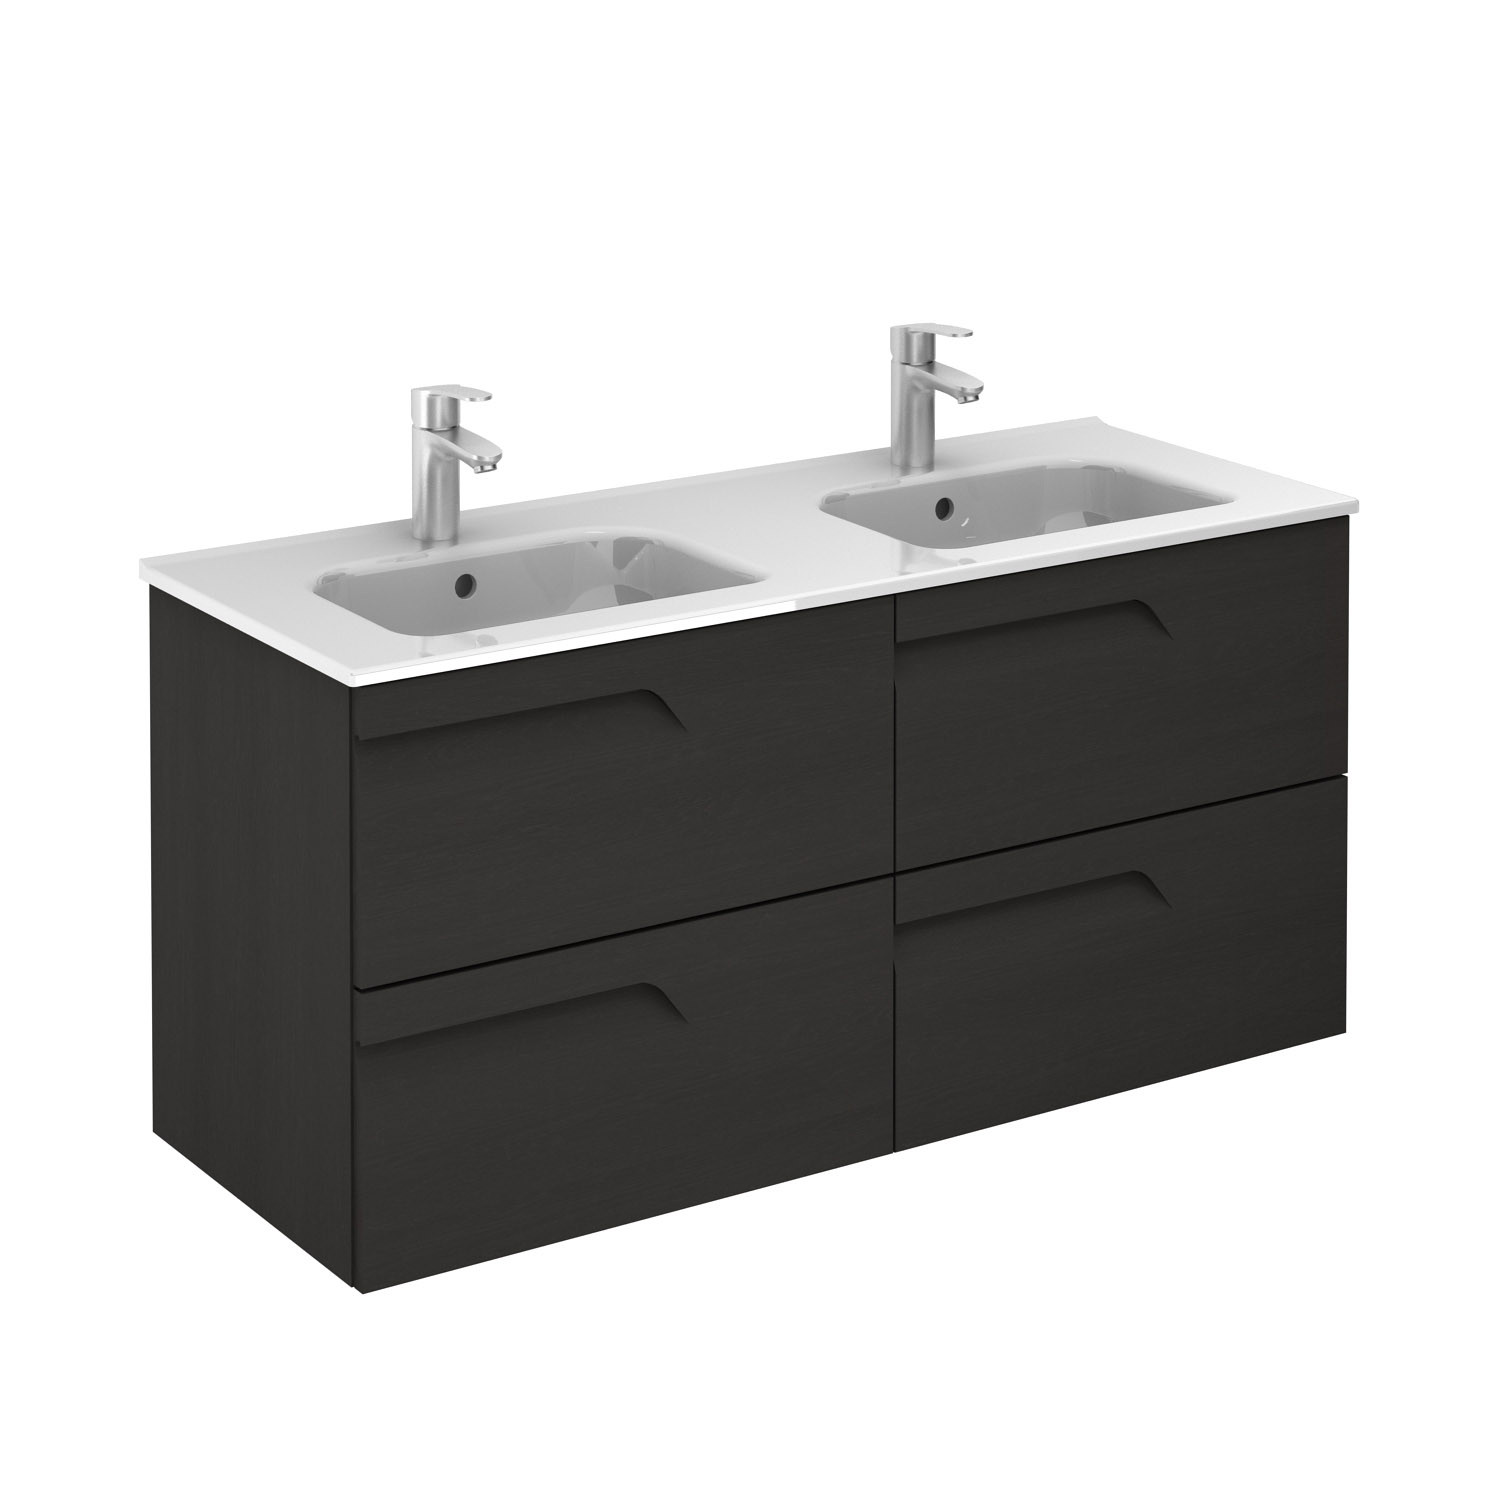 Vitale 1200mm 4 Drawer Double Basin, Double Sink Vanity Units Uk